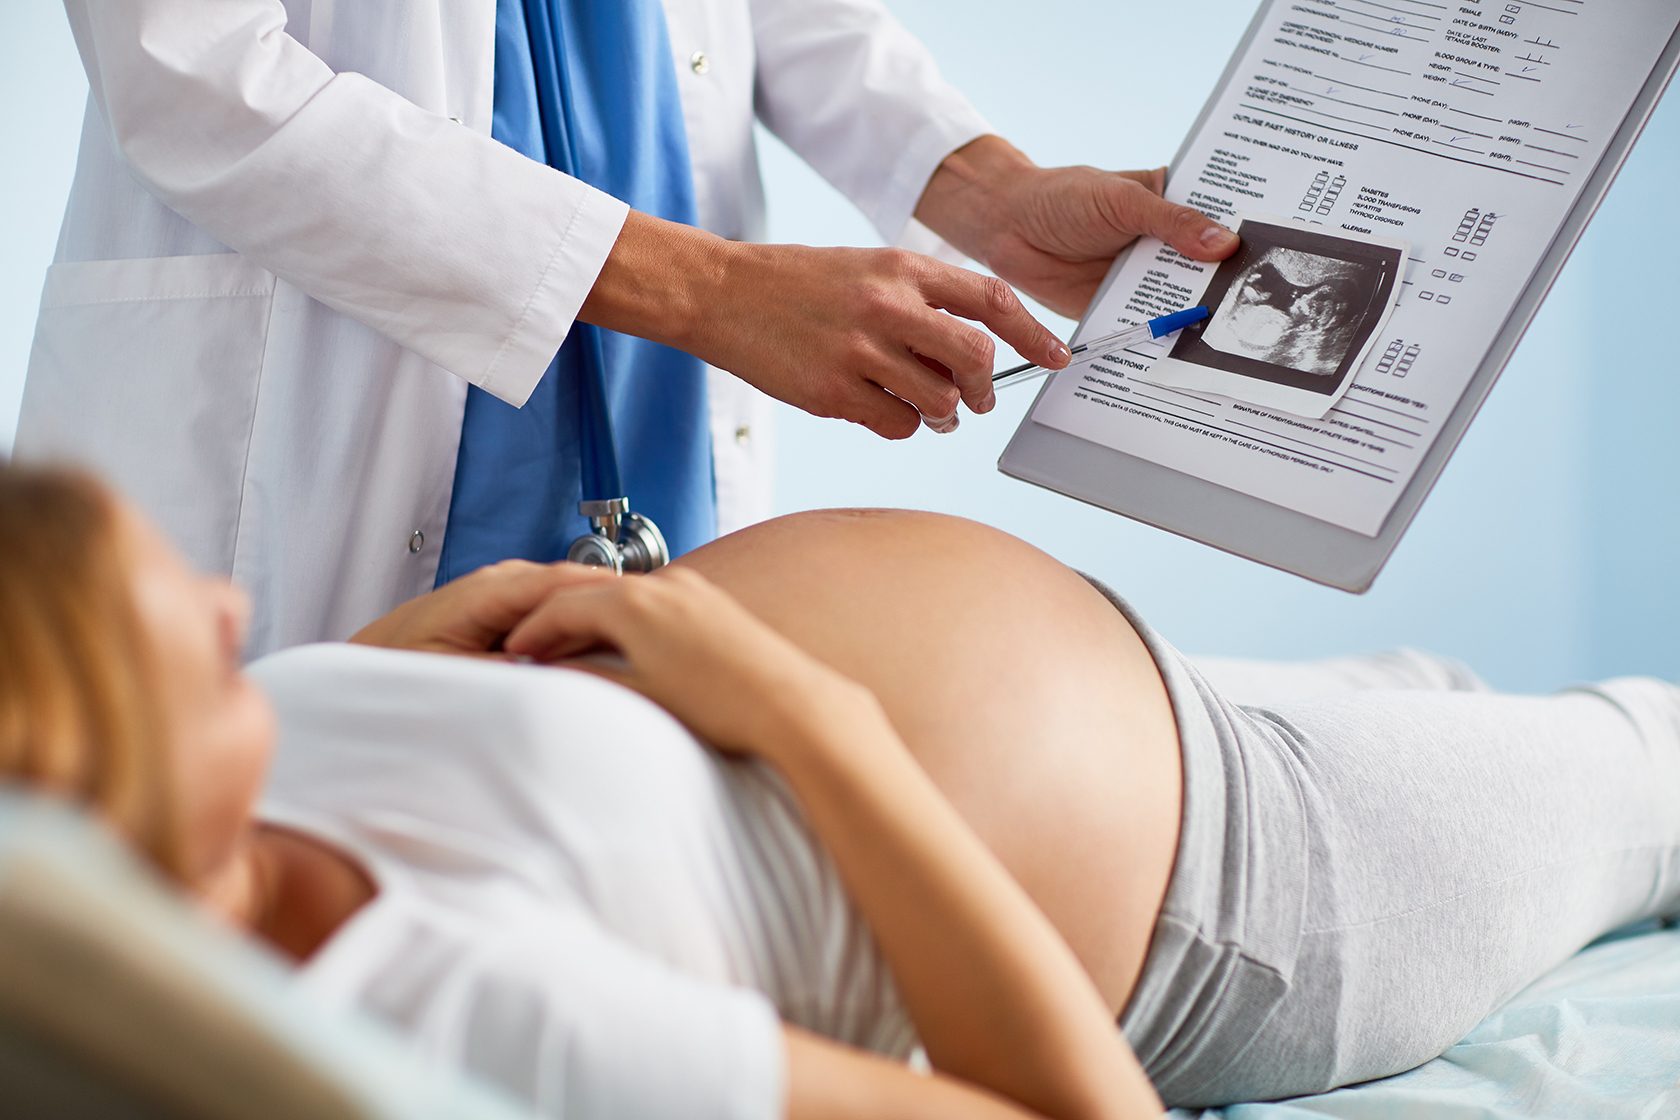 Миома матки, беременность, ЭКО – взгляд эндоваскулярного хирурга